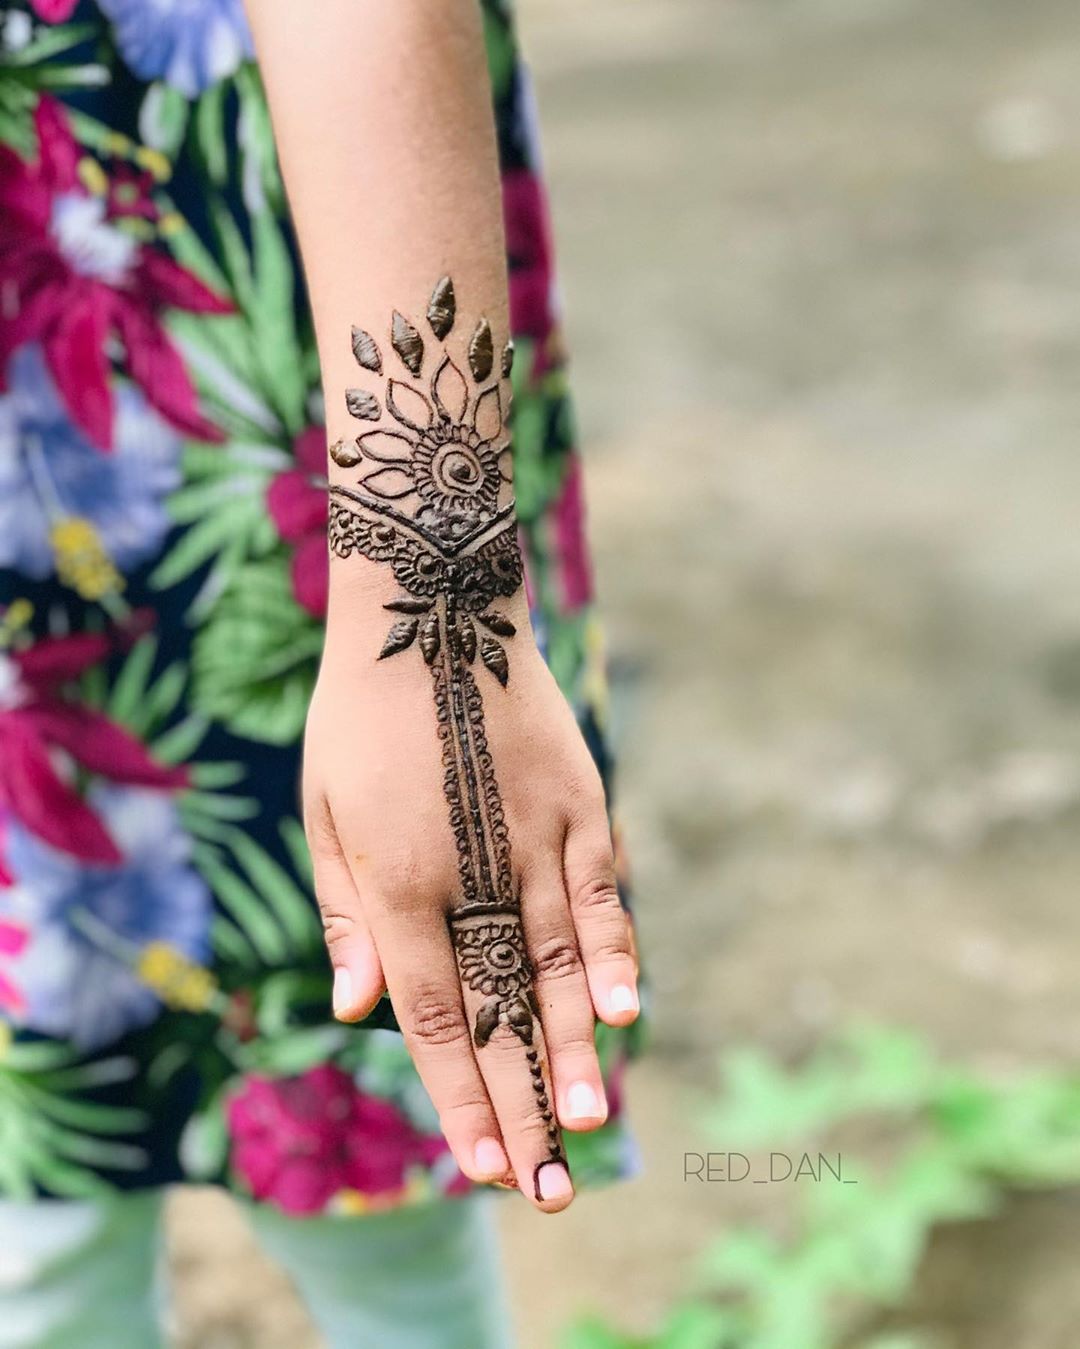 Mendhi tattoo on leaf hand photo  Free Skin Image on Unsplash